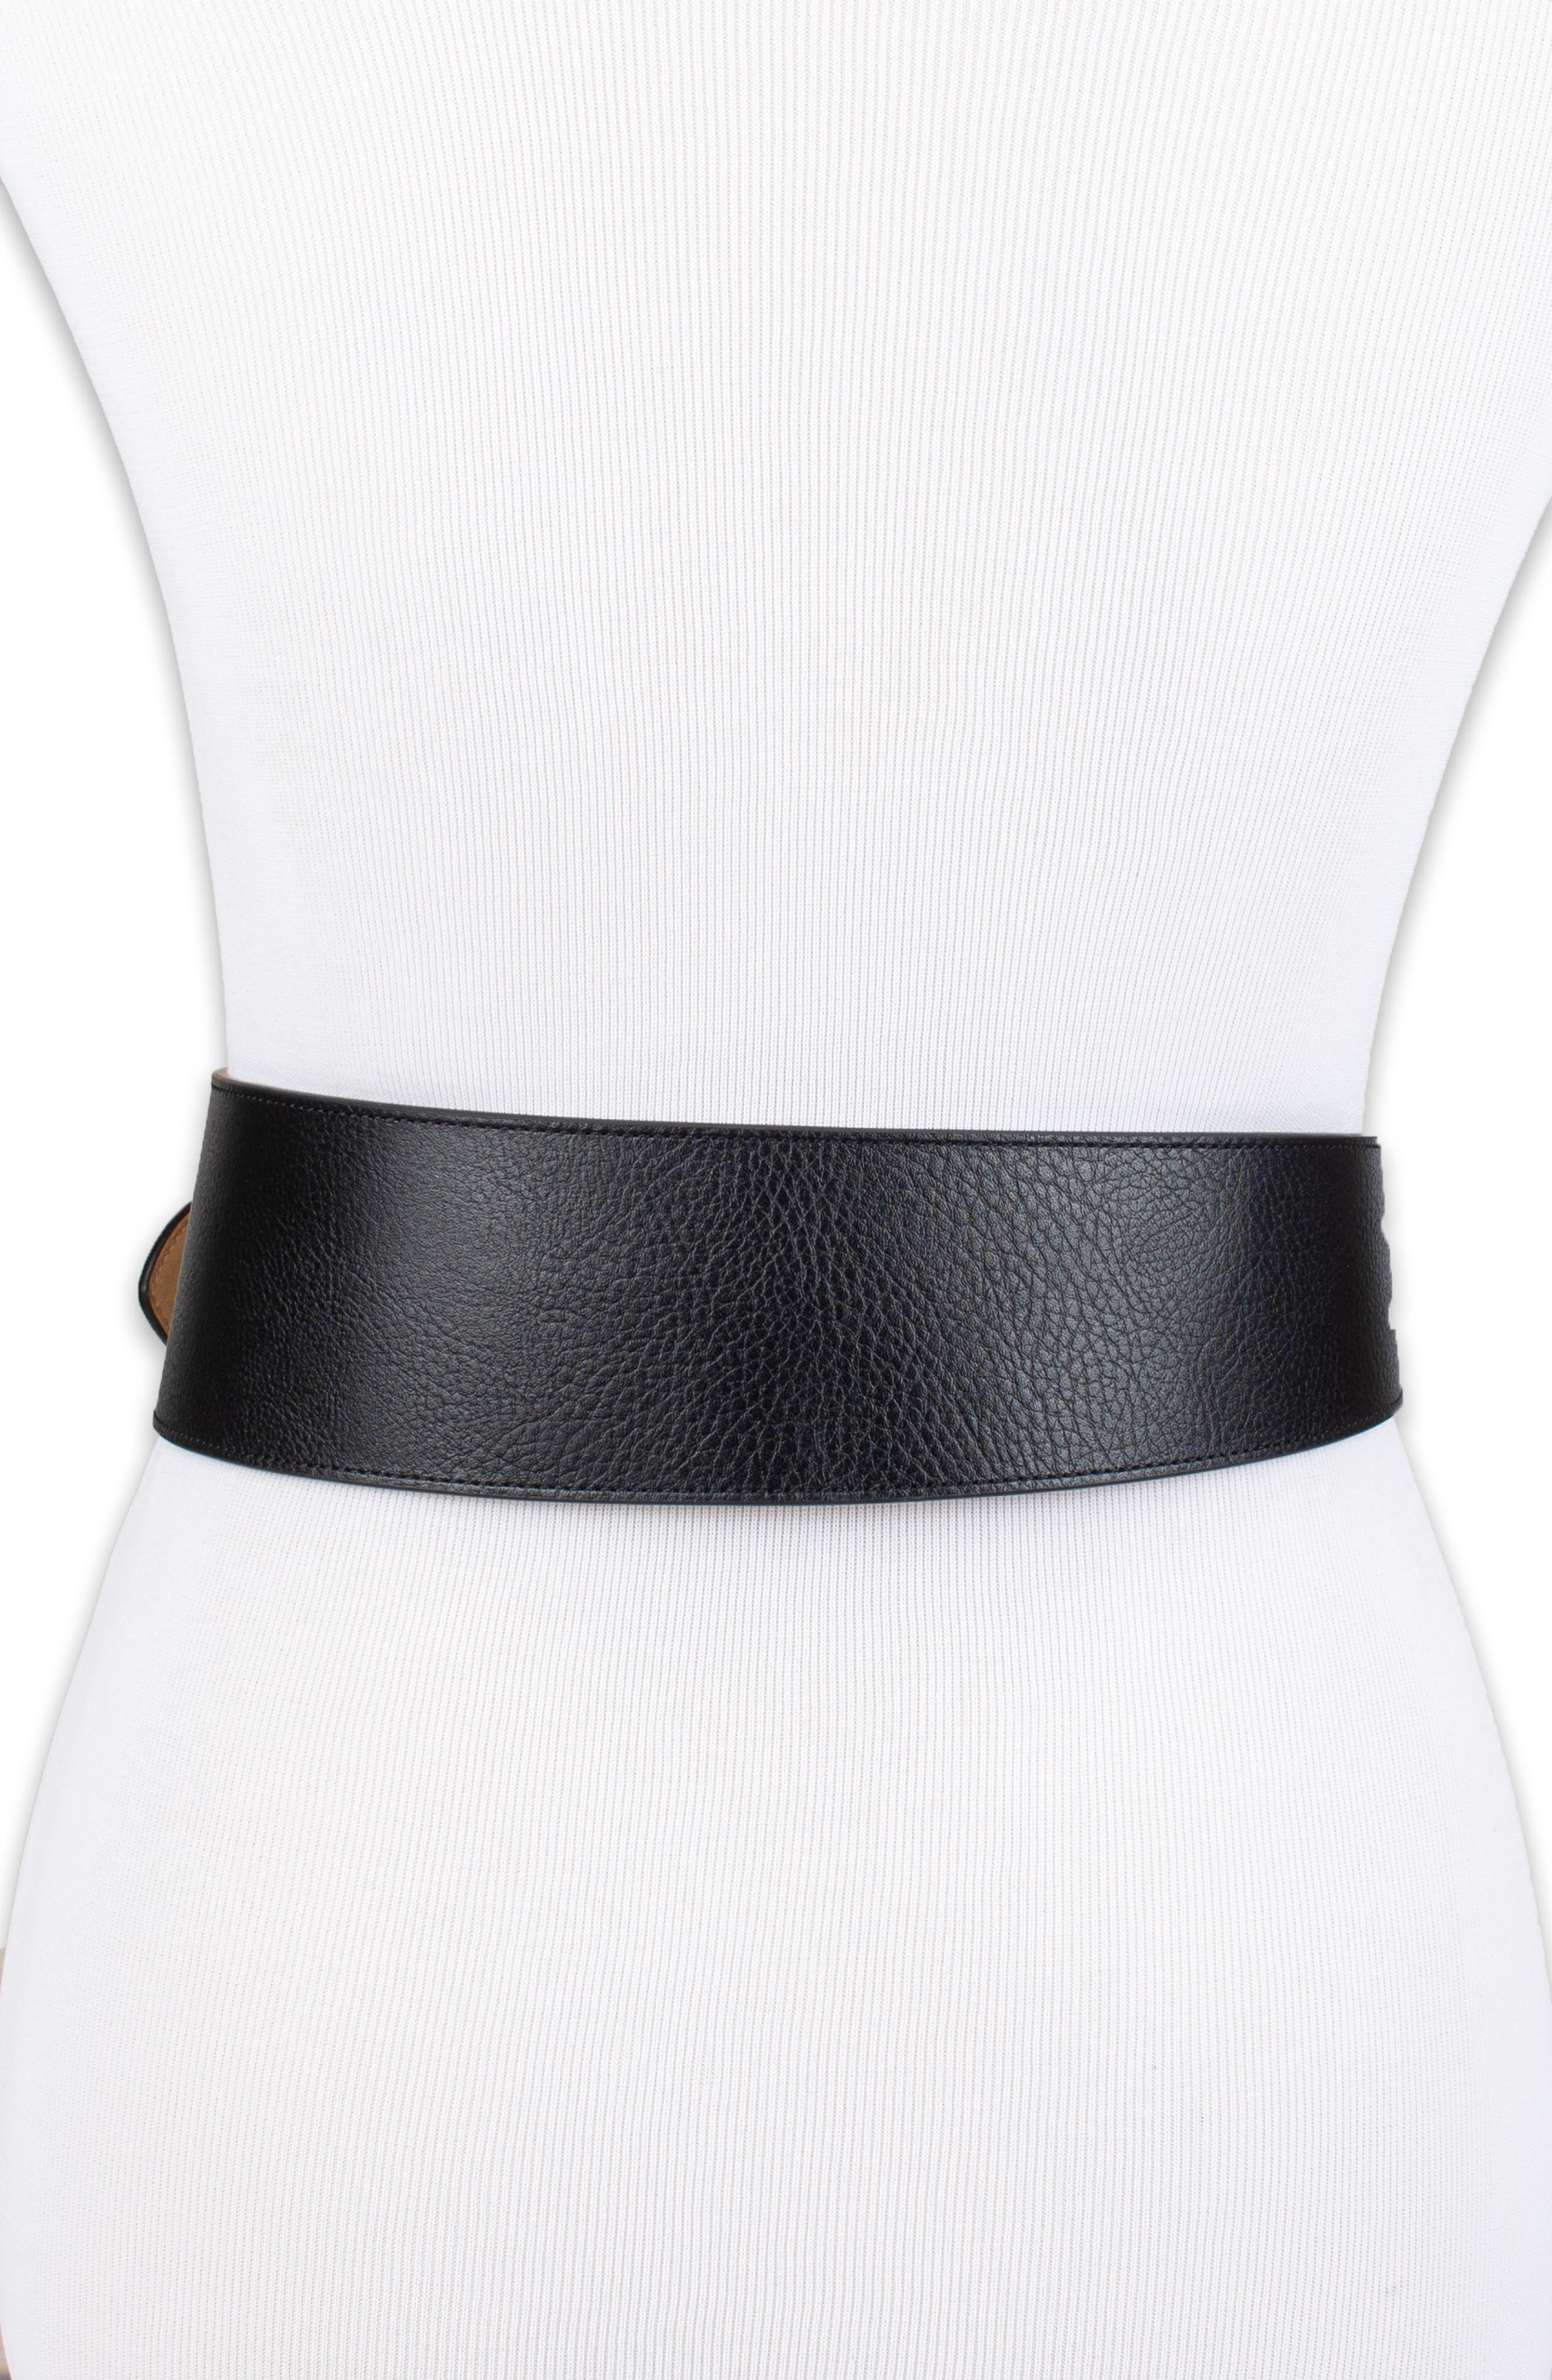 Sam Edelman Women's Double-E Logo Plaque Buckle Belt